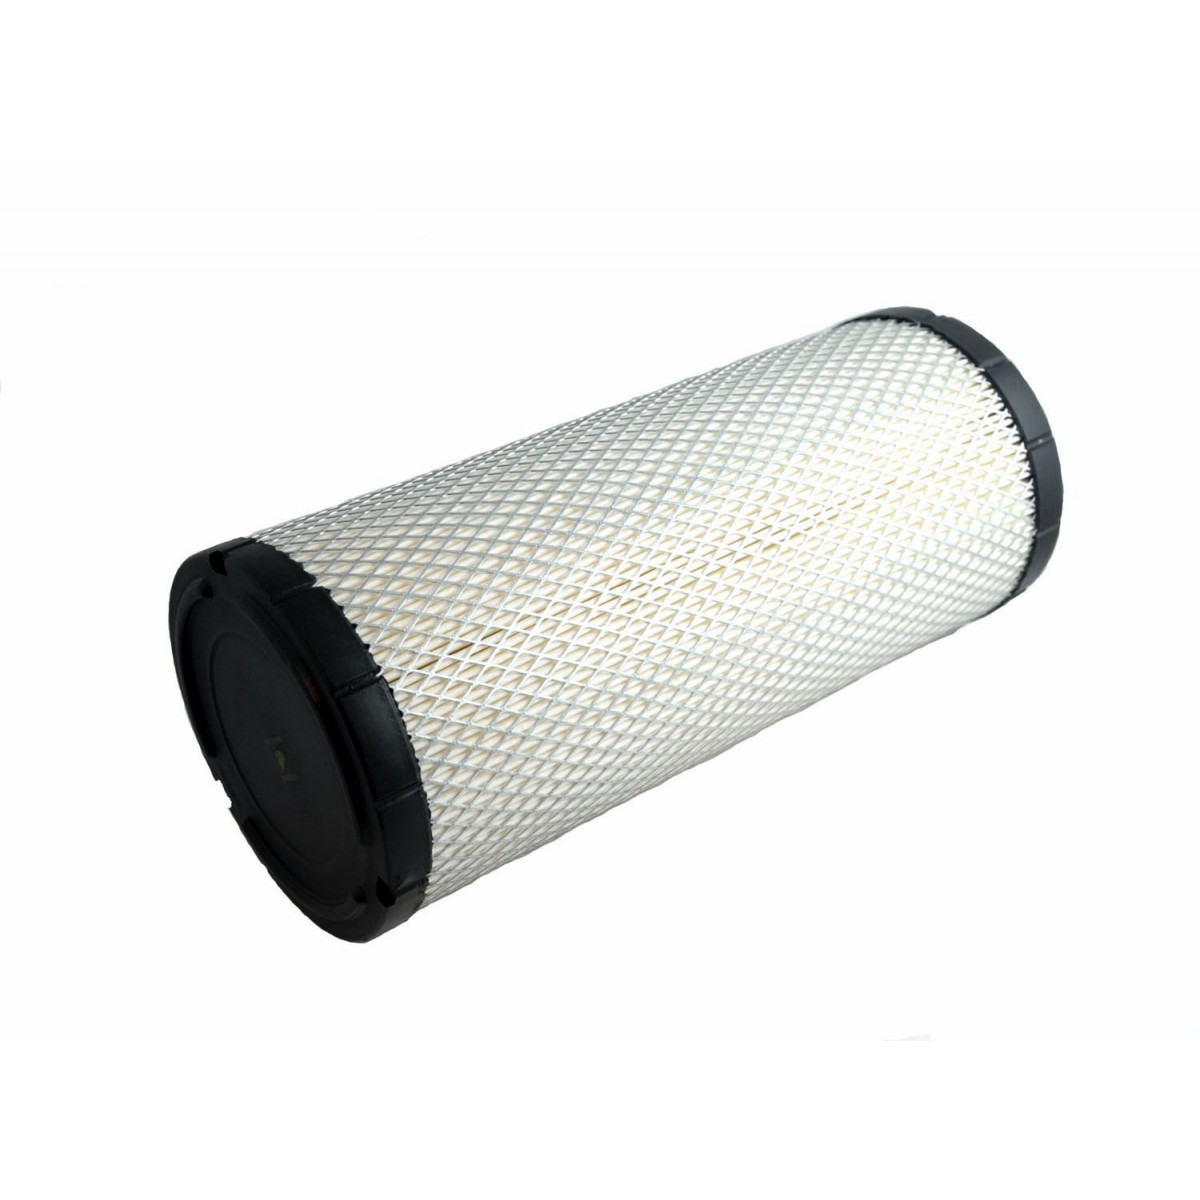 Vzduchový filtr Kubota M5000 / 310 x 128 mm / HH950-42270